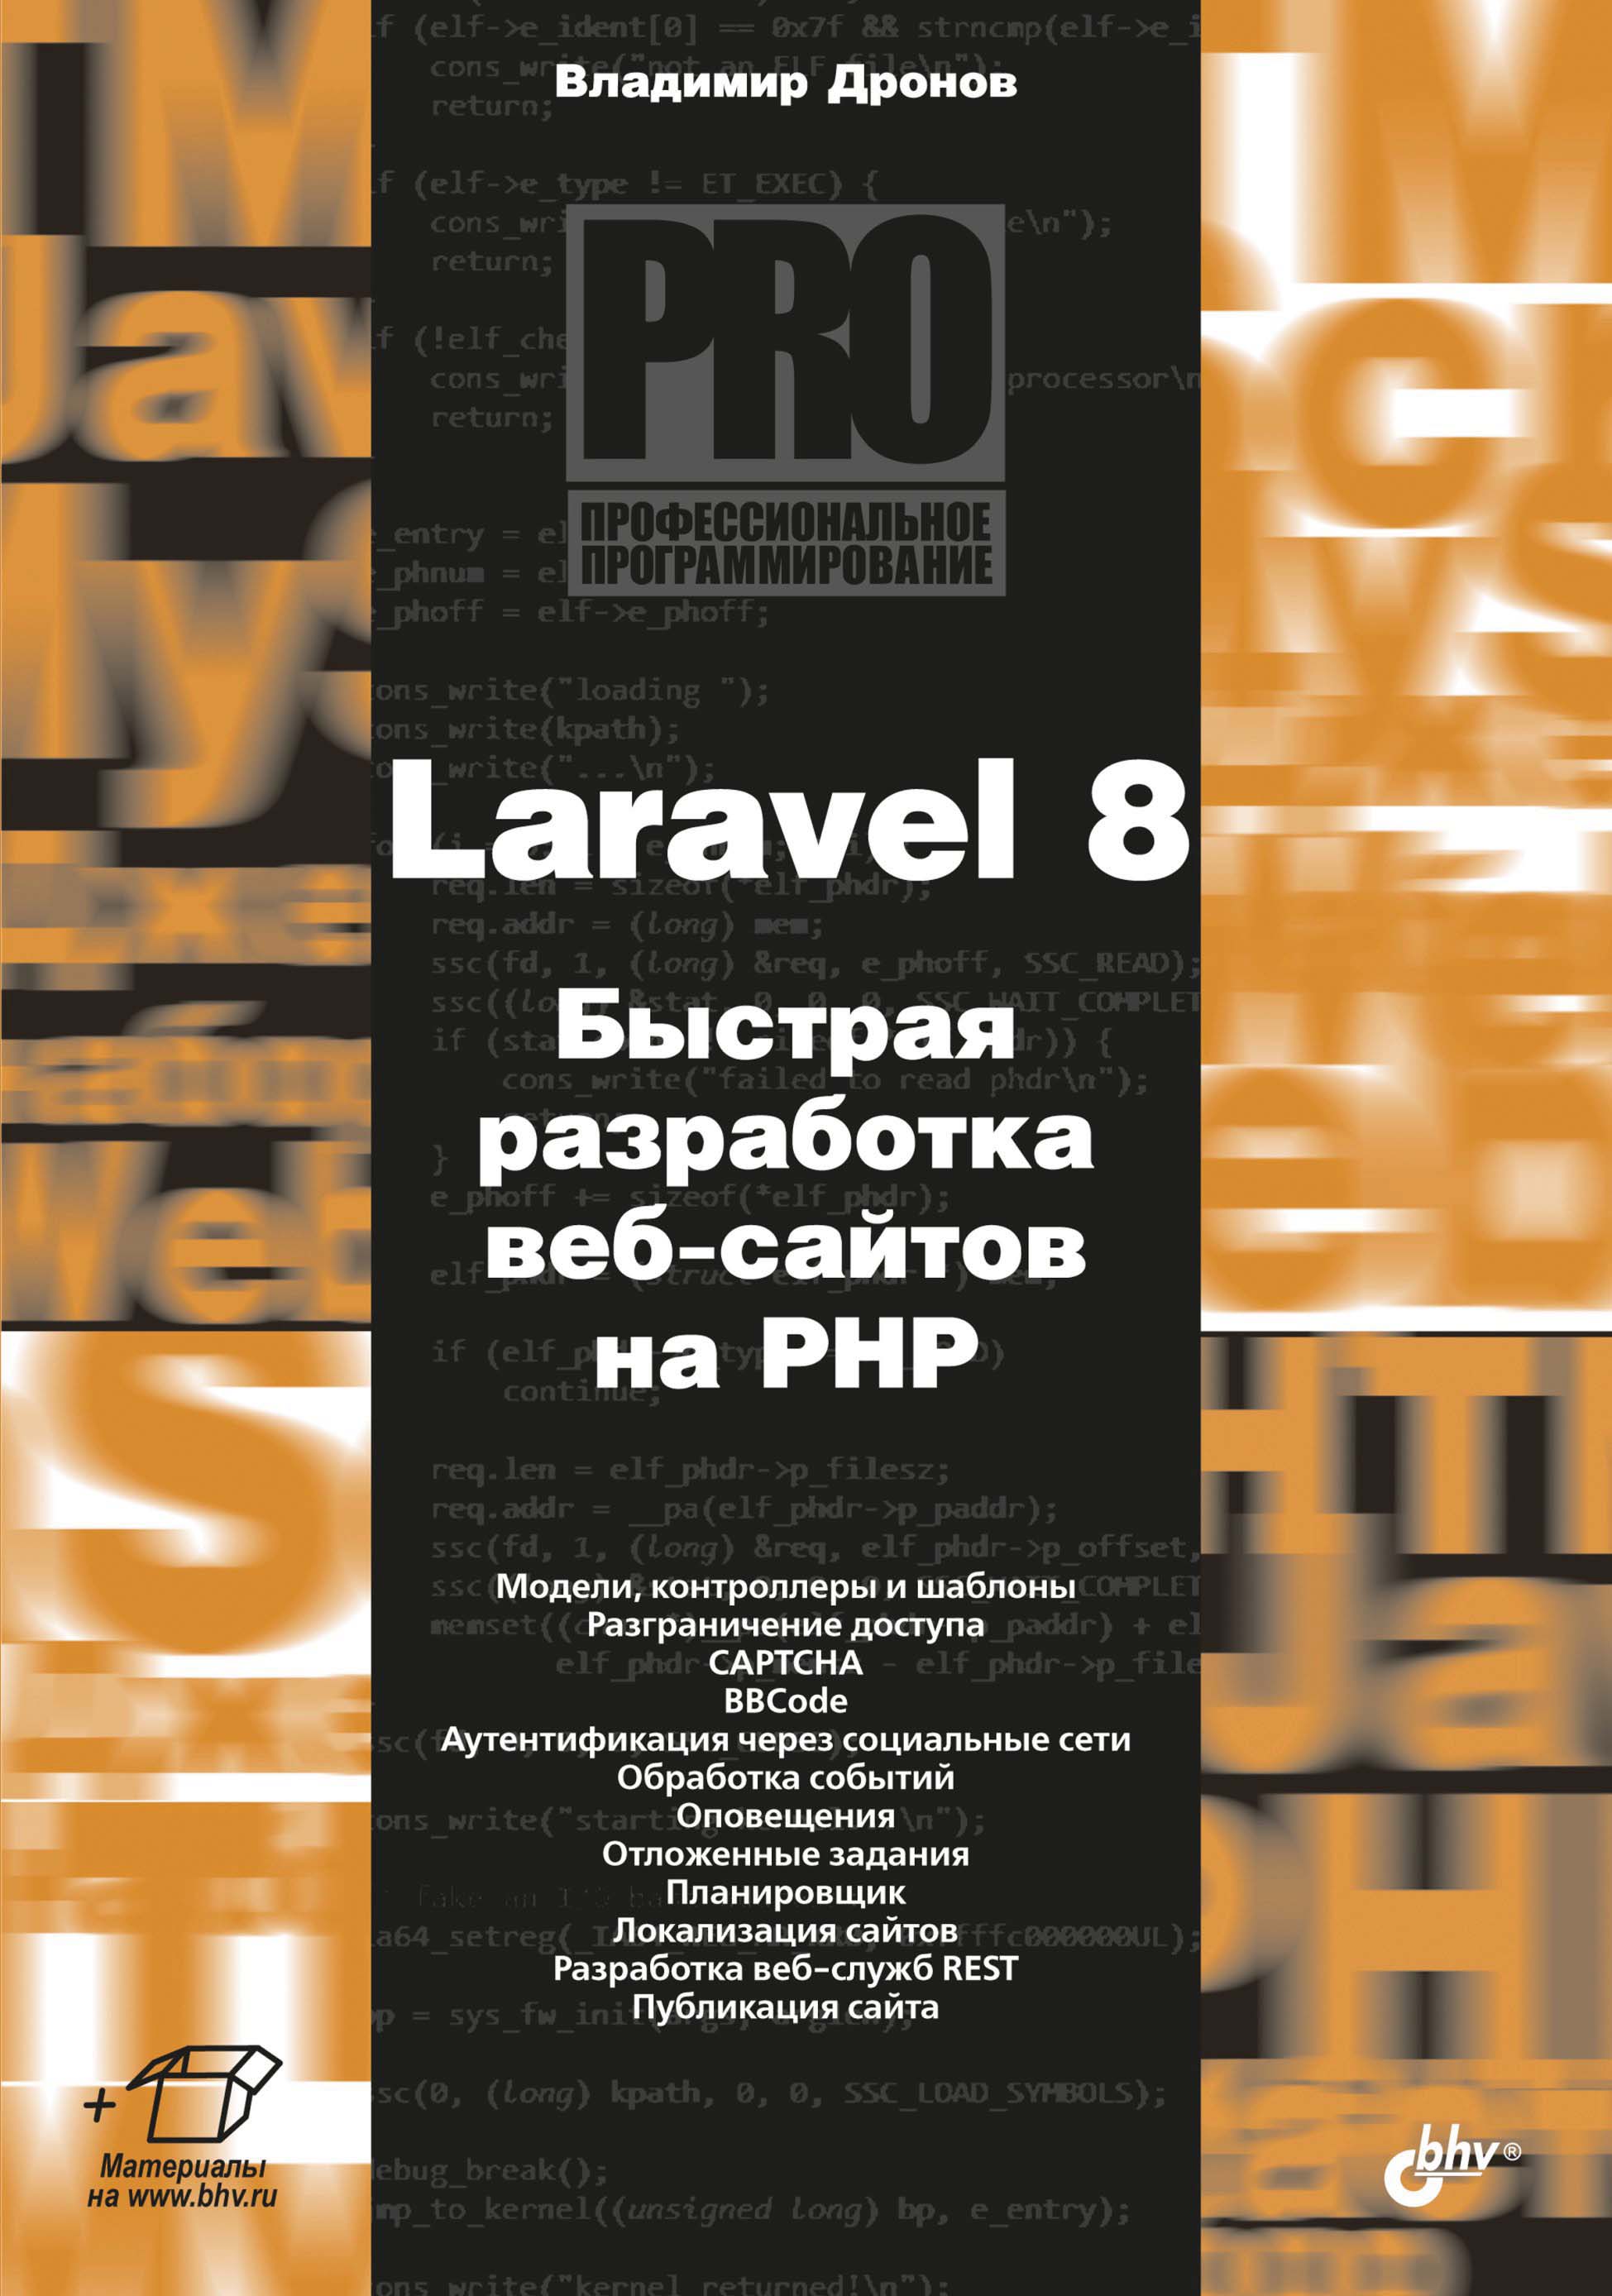 Книга Профессиональное программирование Laravel 8. Быстрая разработка веб-сайтов на PHP созданная Владимир Дронов может относится к жанру интернет, программирование, руководства. Стоимость электронной книги Laravel 8. Быстрая разработка веб-сайтов на PHP с идентификатором 67726665 составляет 449.00 руб.